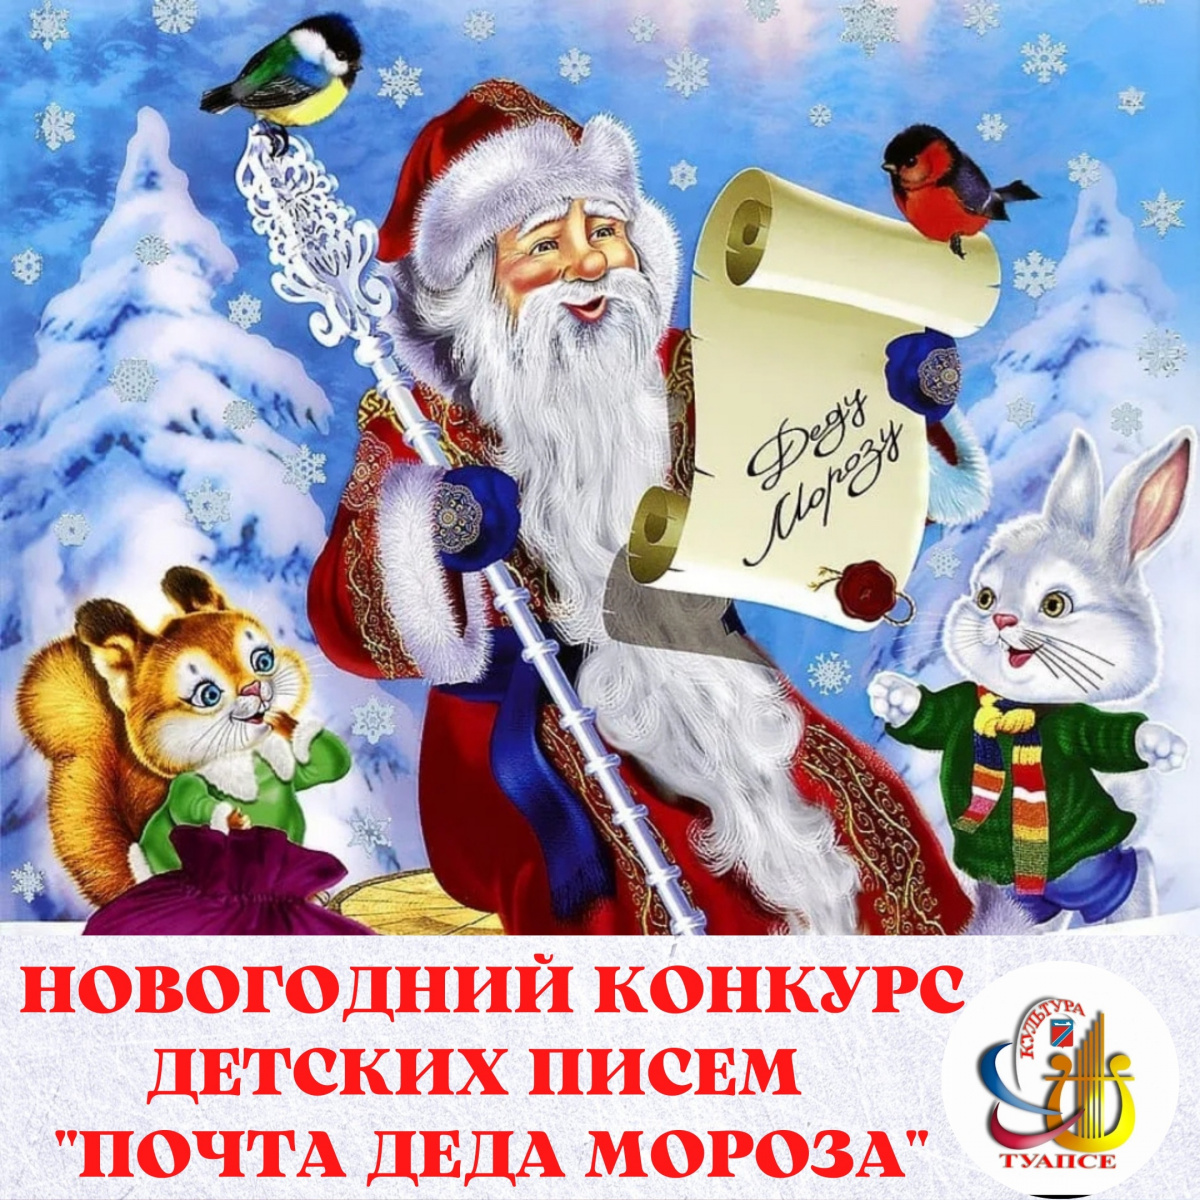 Новогодний конкурс детских писем "Почта Деда Мороза"